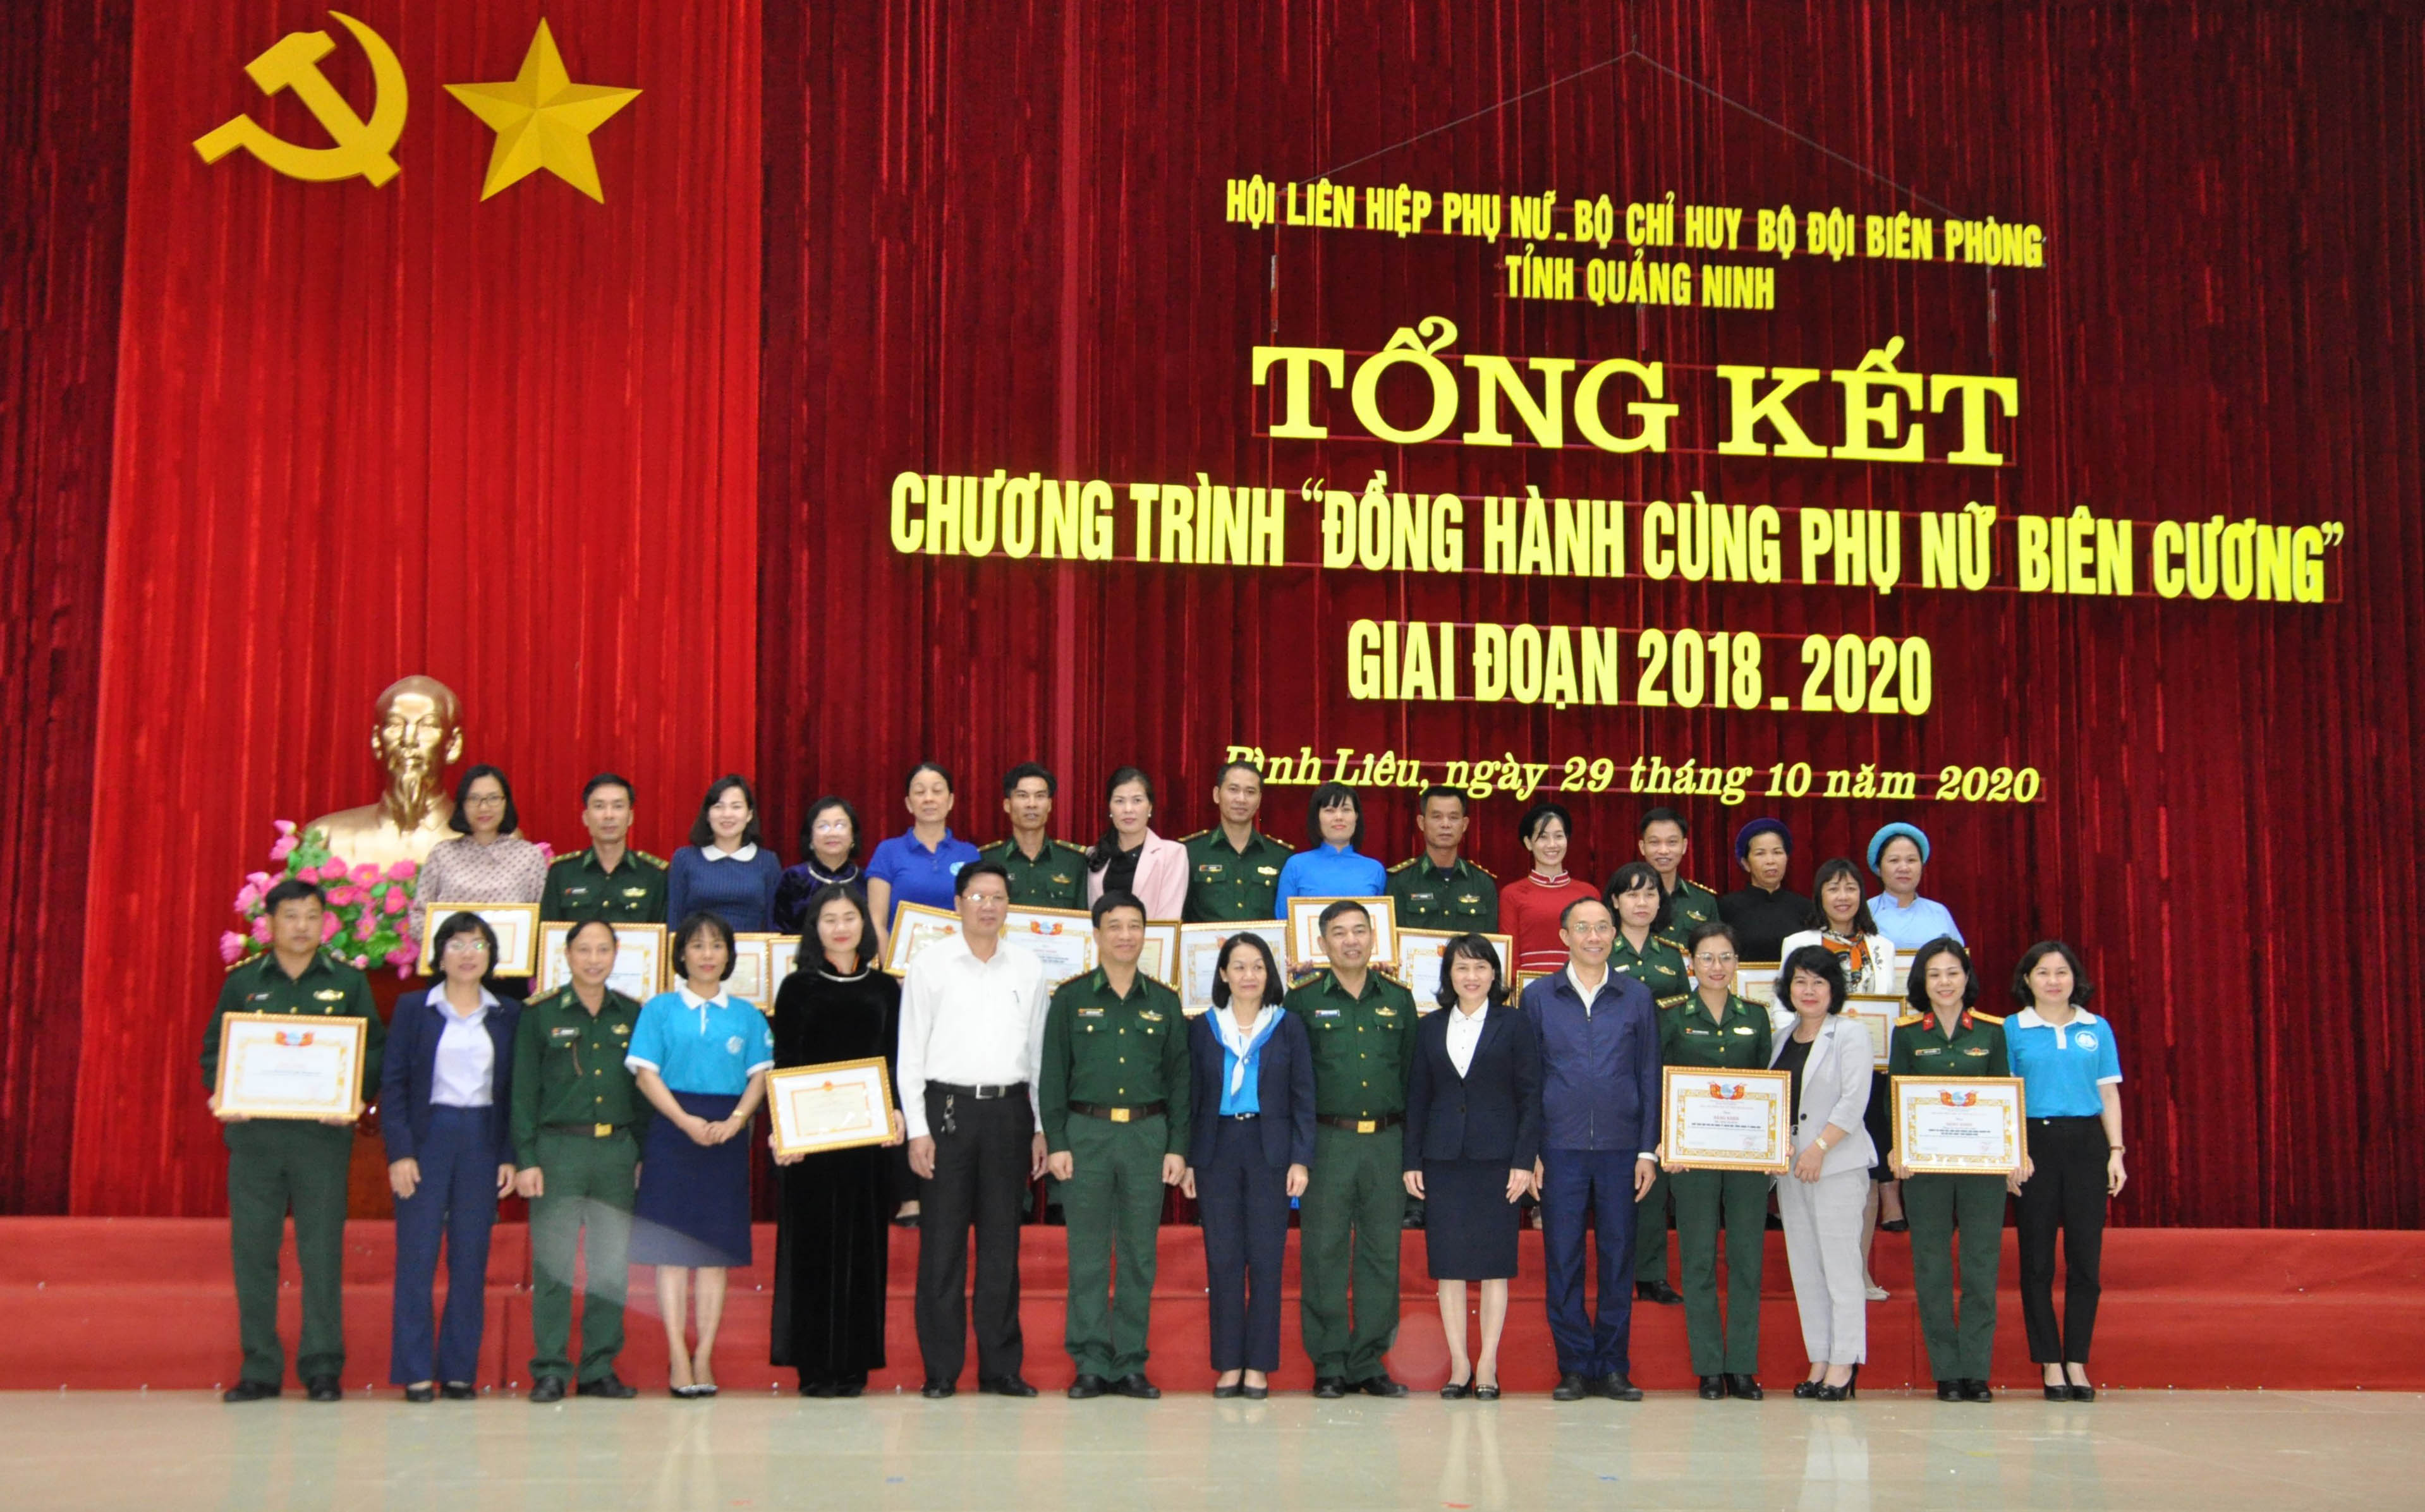 Hội LHPN và Bộ chỉ huy BĐBP Quảng Ninh khen thưởng cho các tập thể, cá nhân có thành tích xuất sắc trong việc thực hiện chương trình.